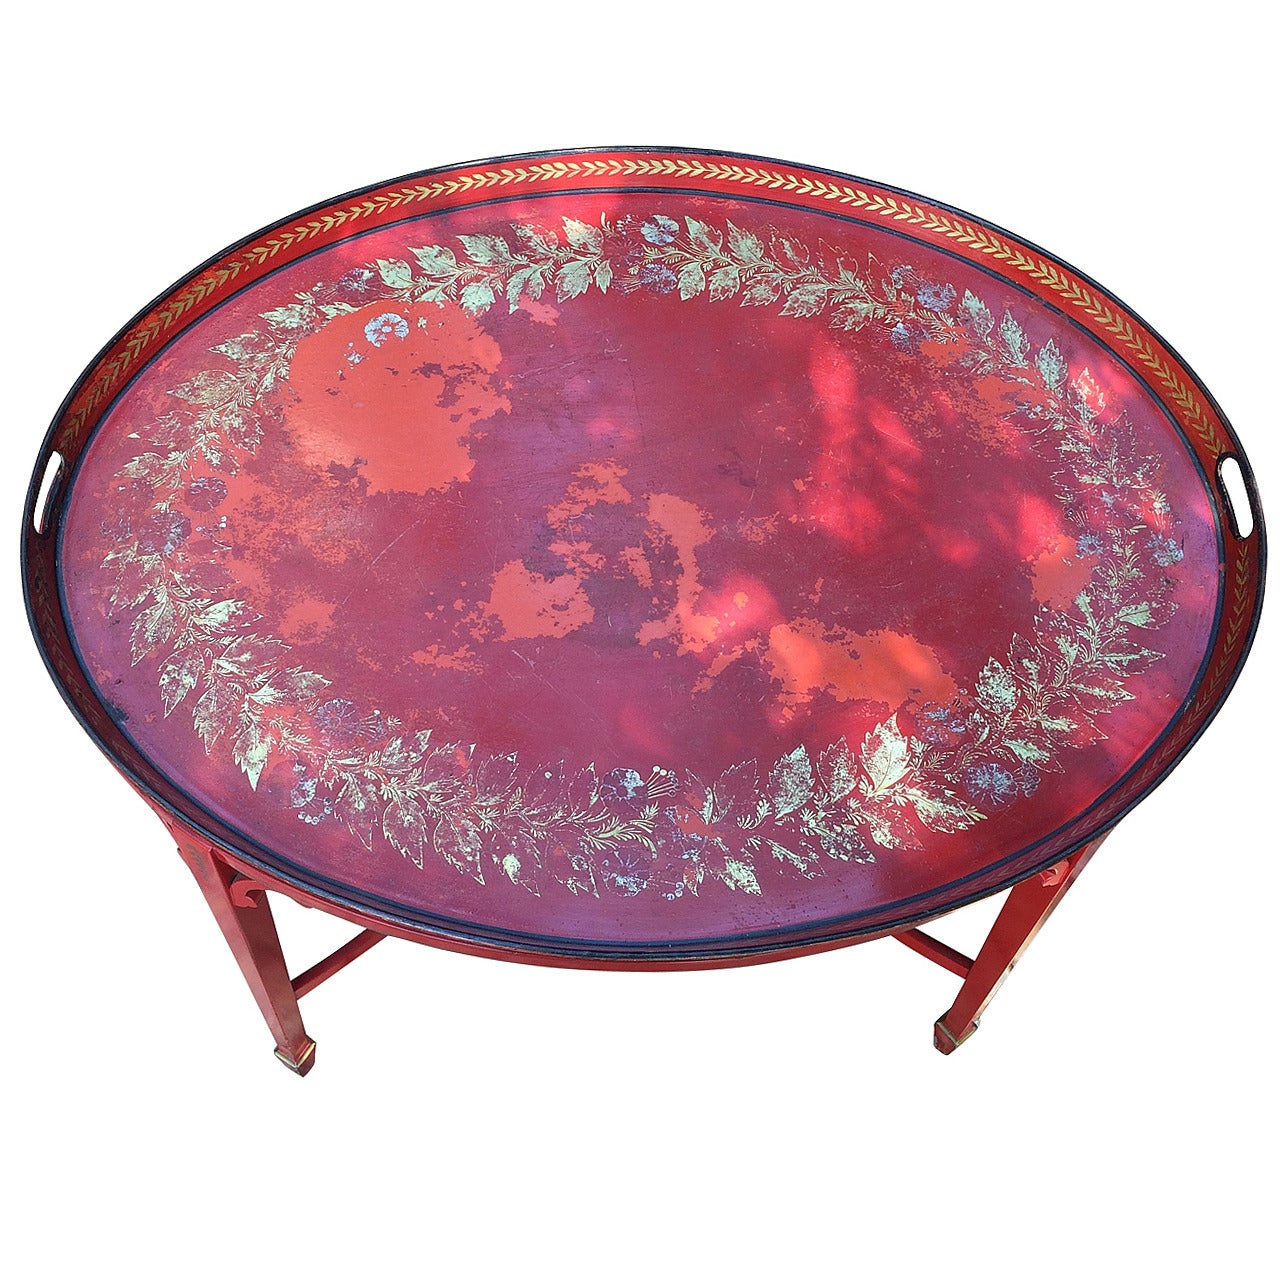 Ovaler Empire-Tabletttisch aus rotem Zinn mit vergoldetem Paket